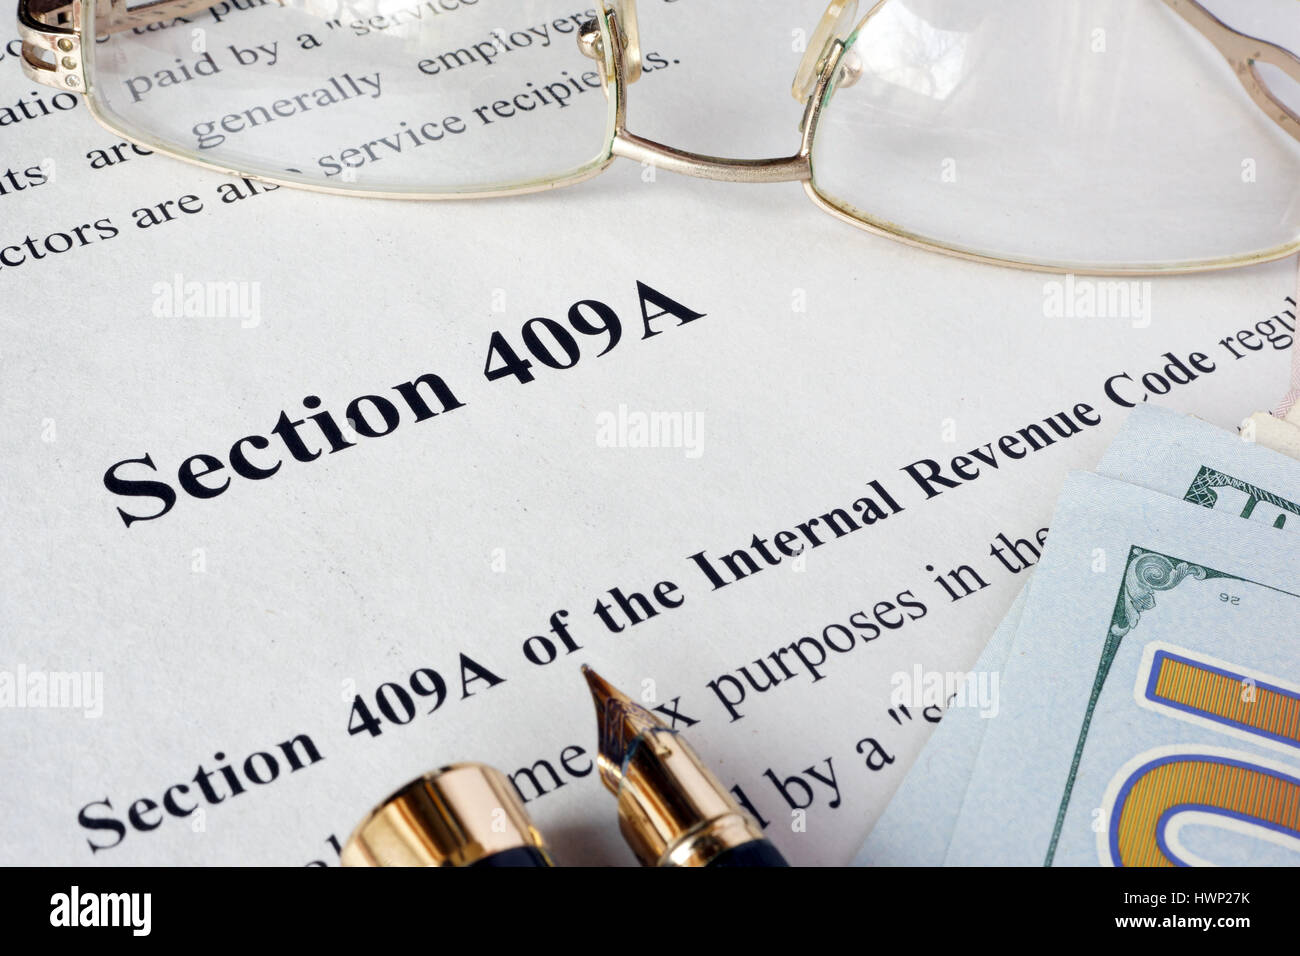 Internal Revenue Code Sezione 409A scritto in un documento. Foto Stock